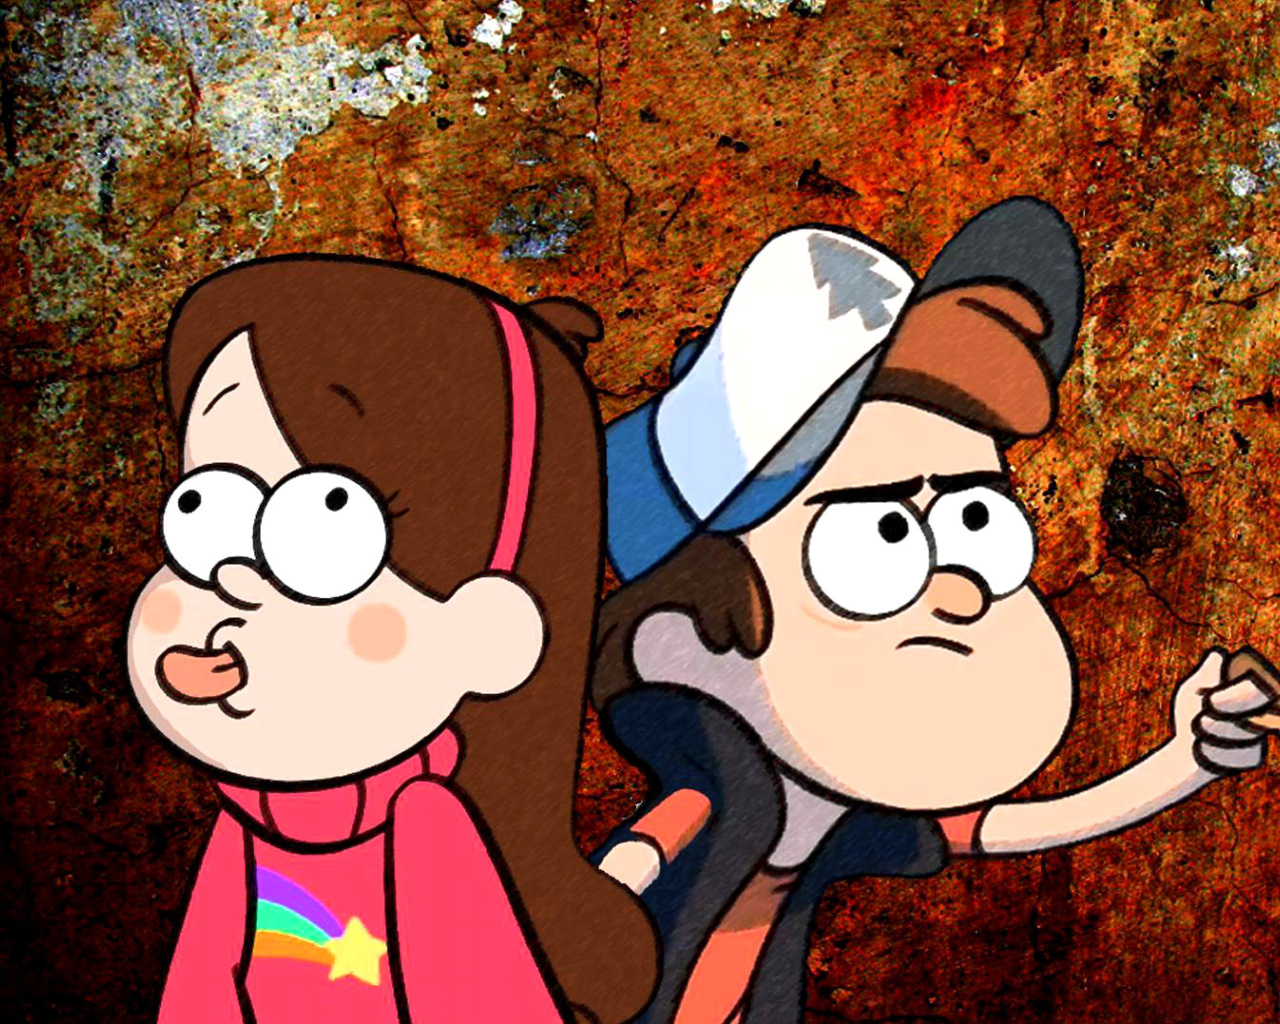 Das Mabel and Dipper in Gravity Falls Wallpaper 1280x1024